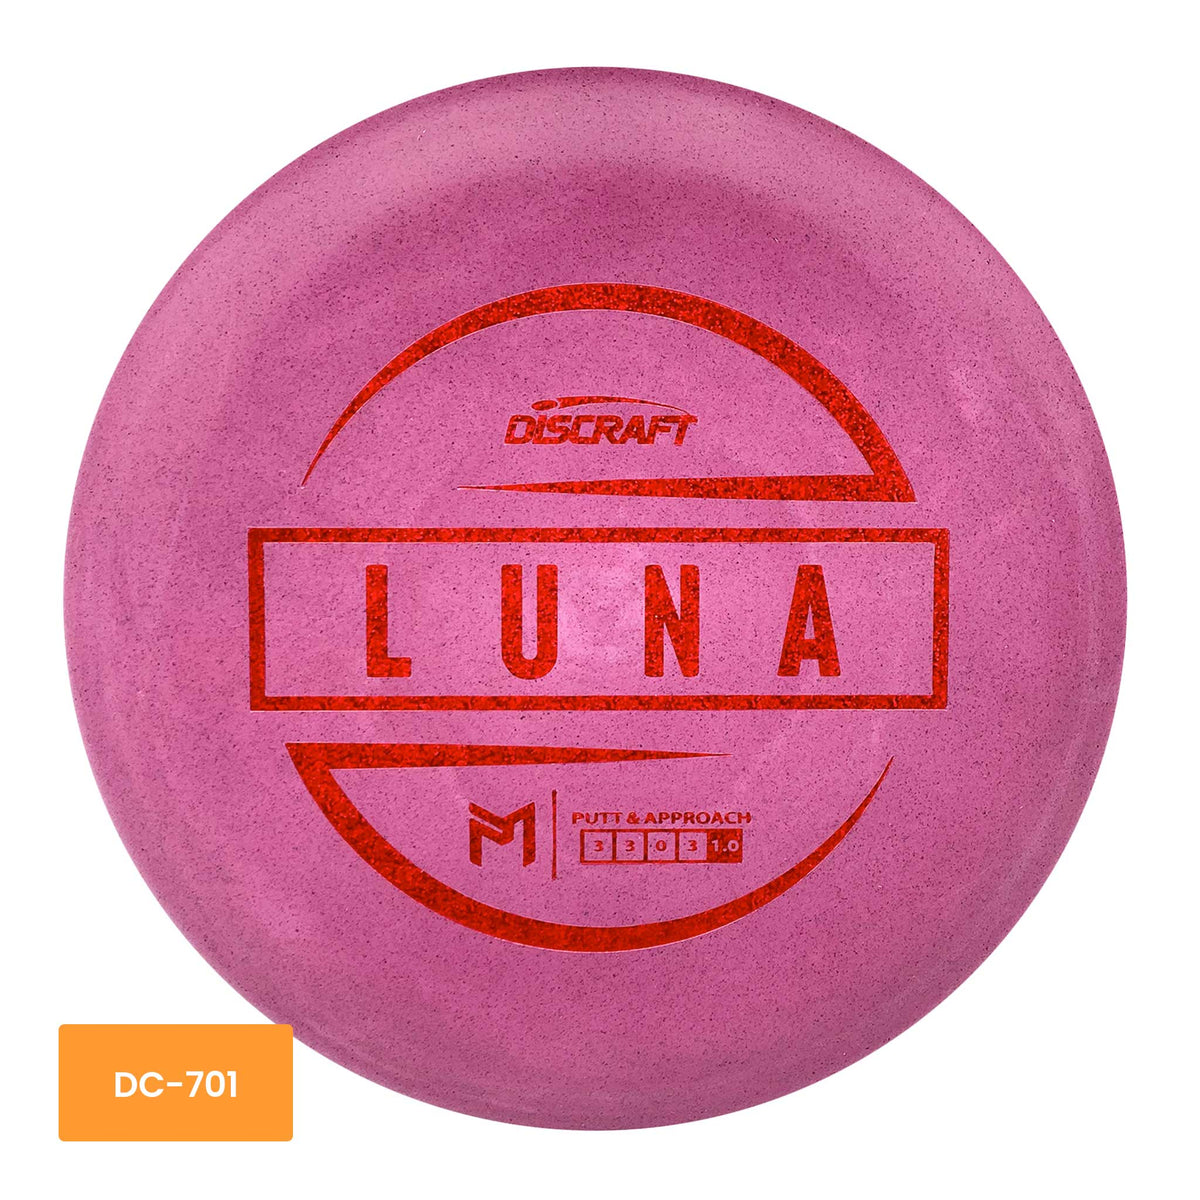 Discraft Paul McBeth Jawbreaker Luna putter and approach - Pink